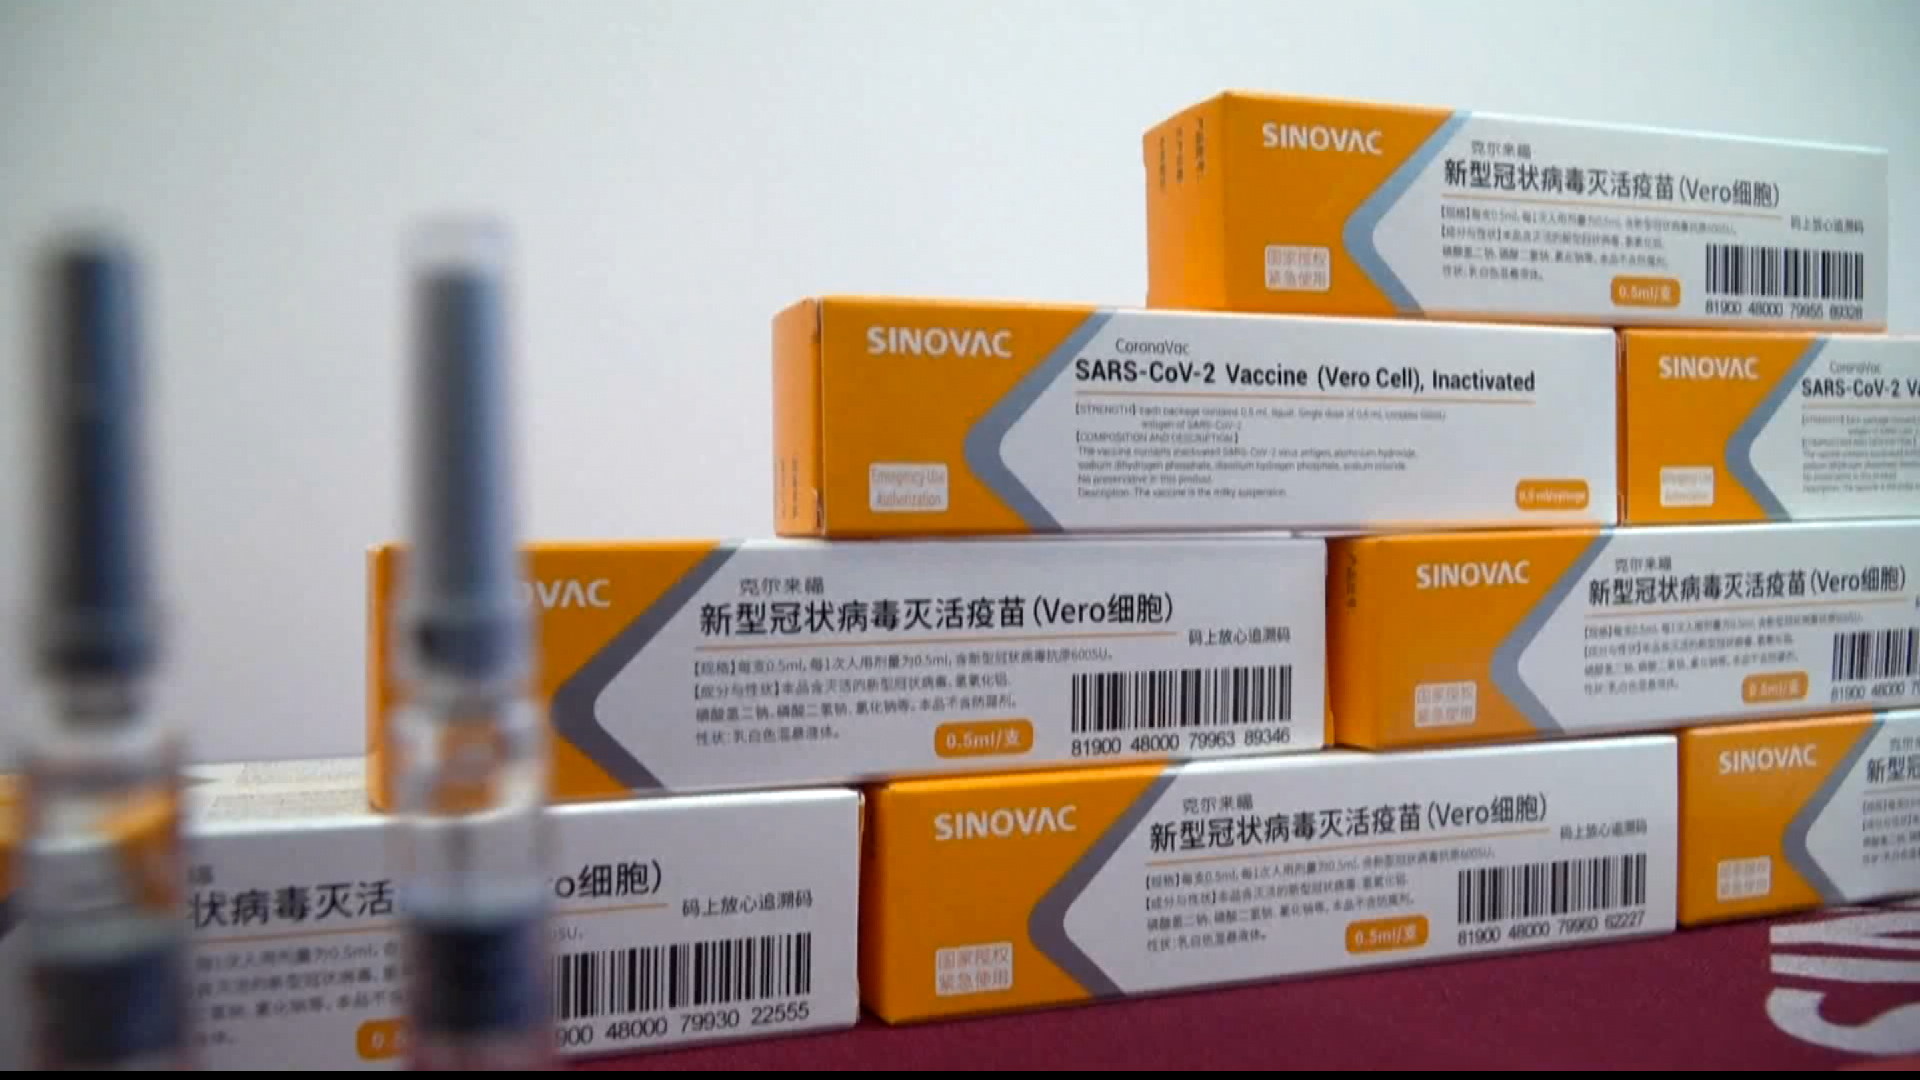 Apakah nama pengeluar vaksin covid-19 yang digunakan di malaysia